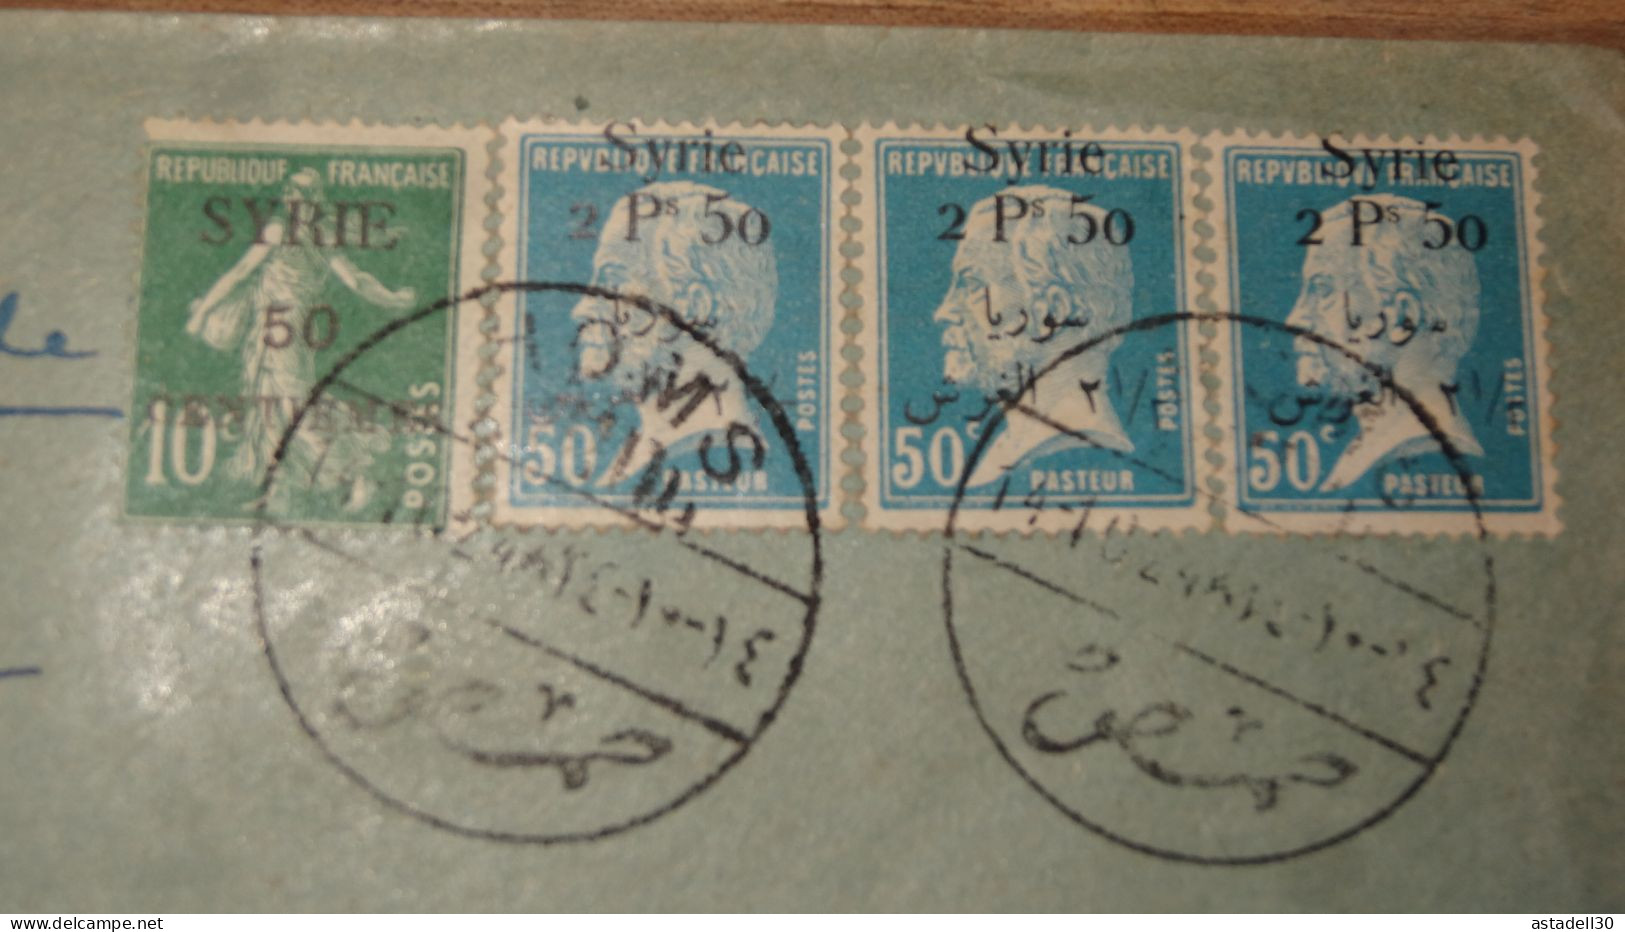 Enveloppe SYRIE, Recommandé,   Homs 1924 ......... Boite1 ..... 240424-201 - Briefe U. Dokumente